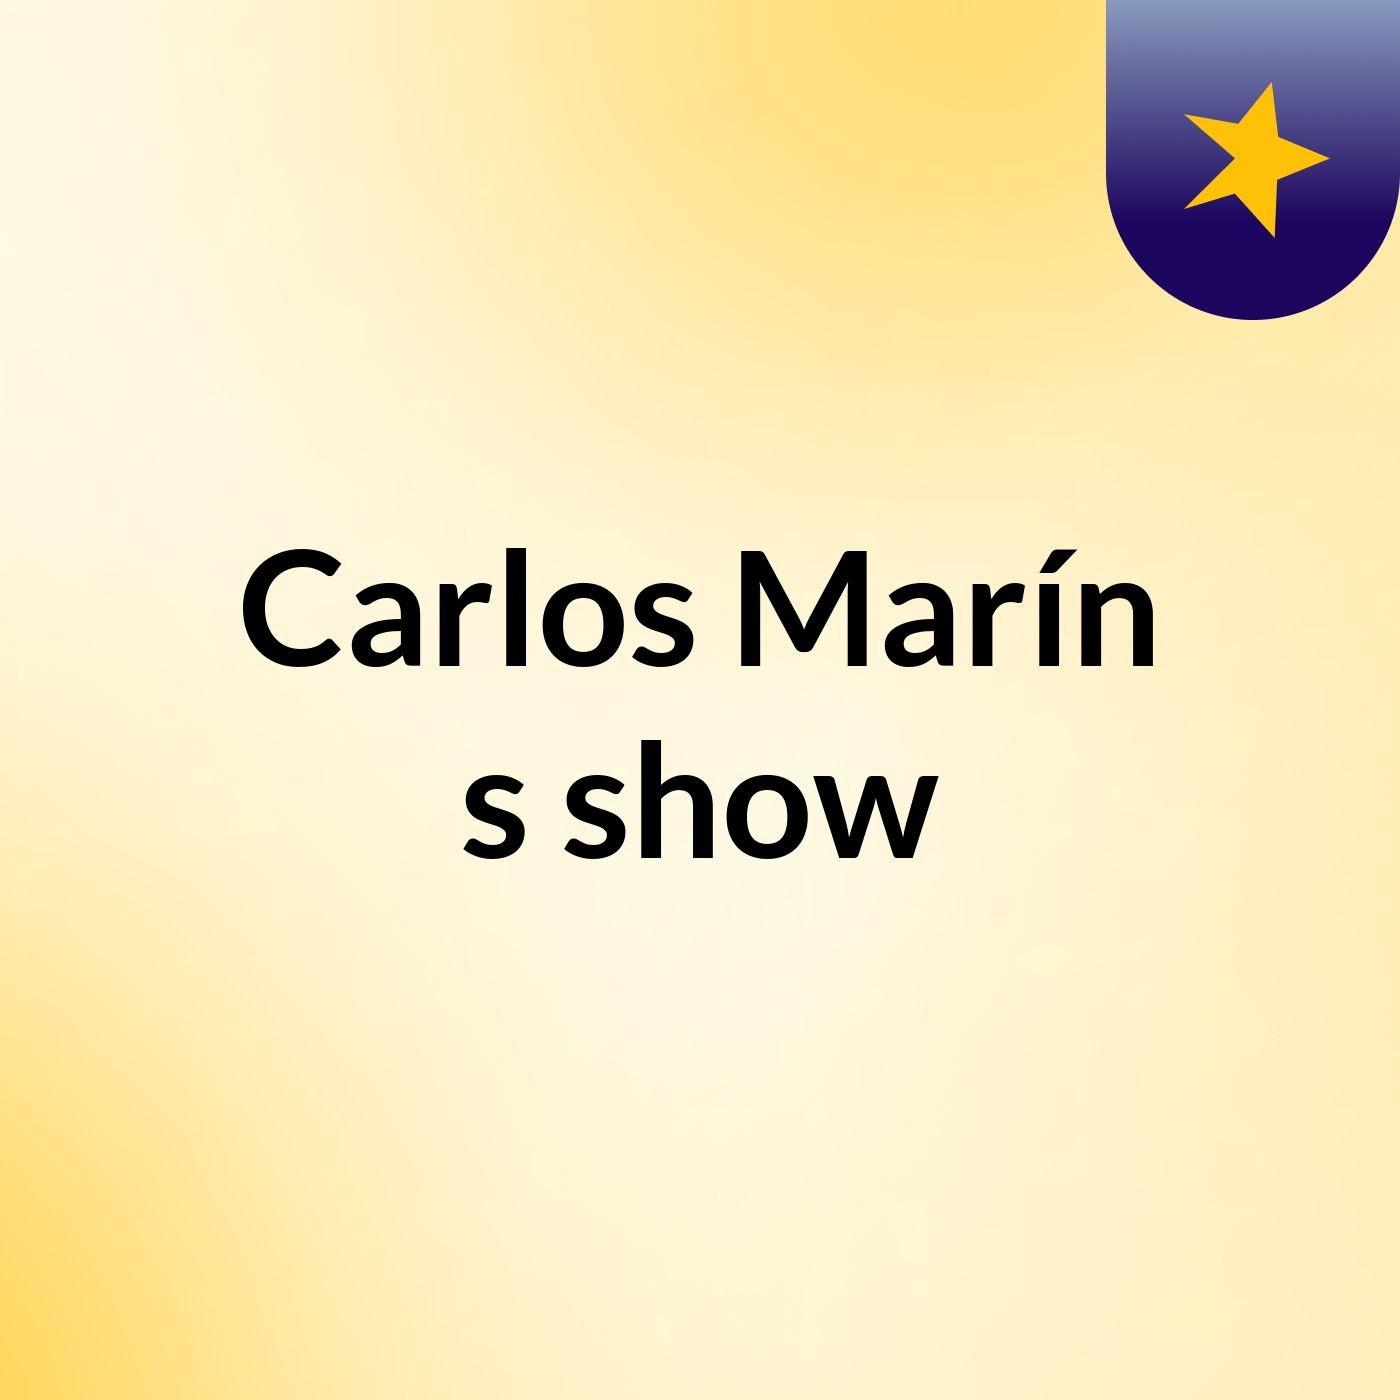 Carlos Marín's show